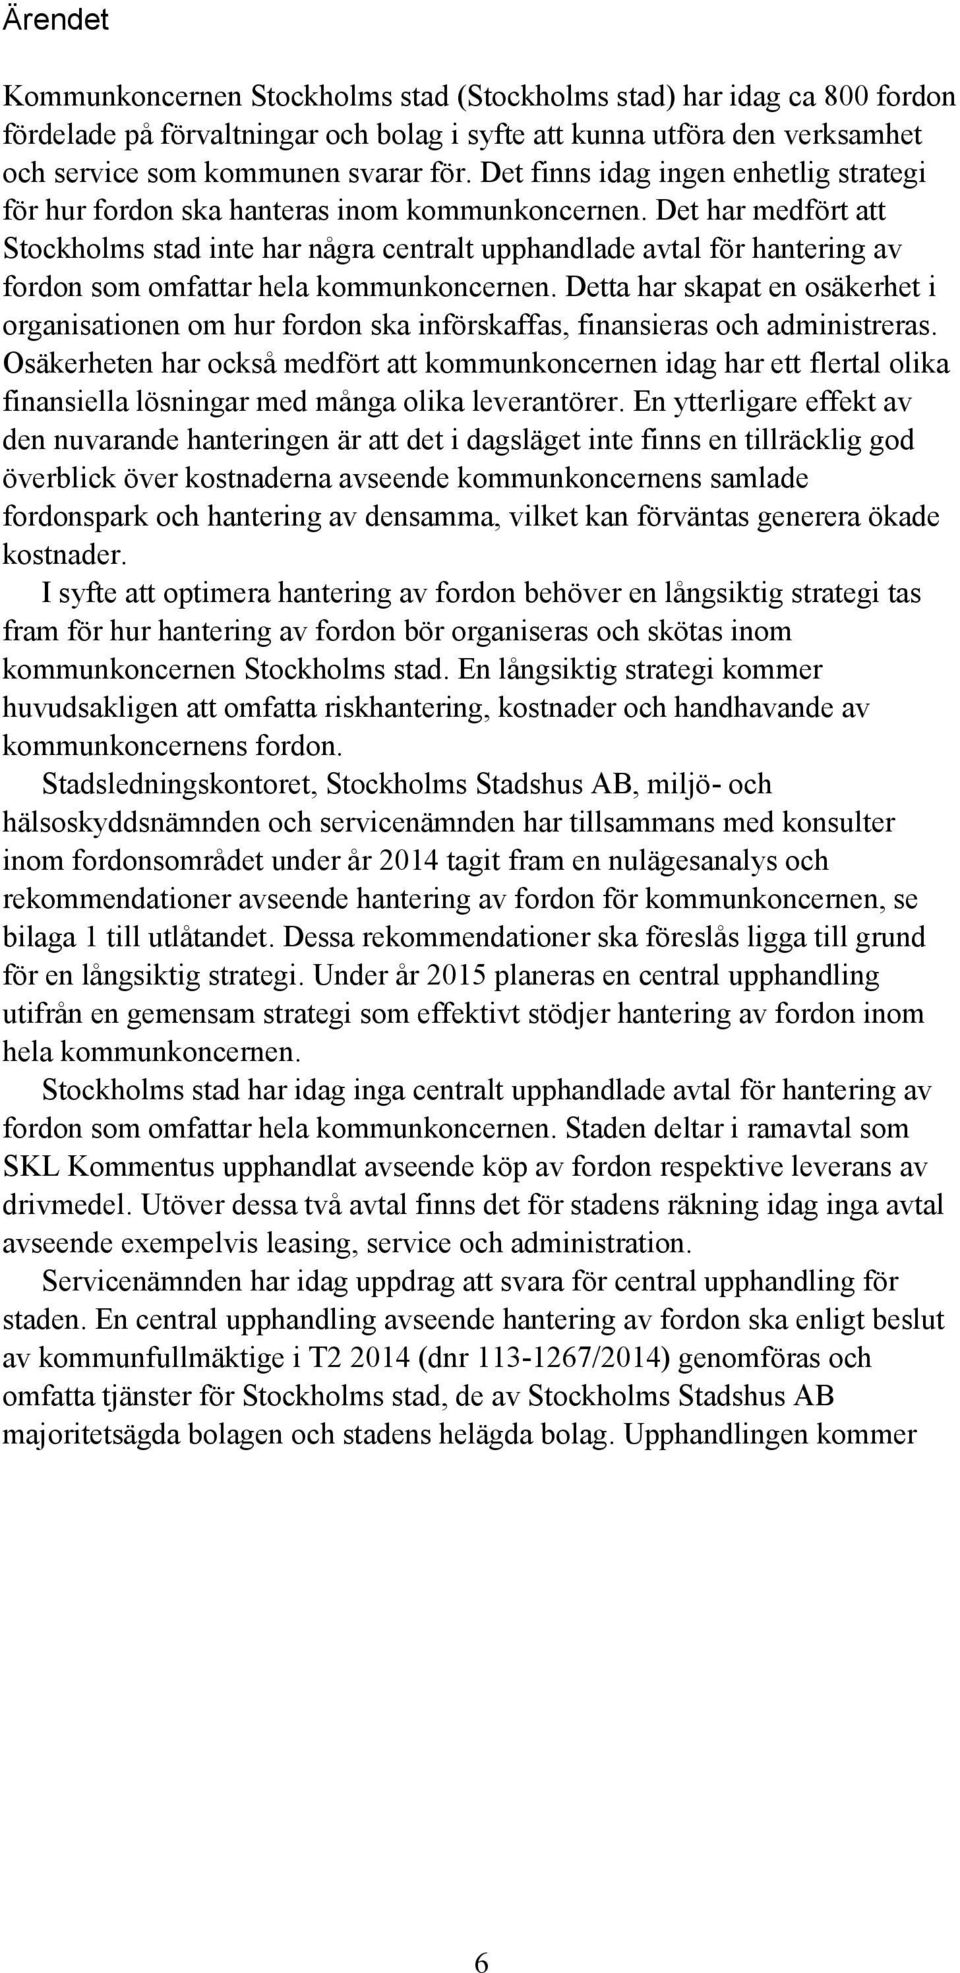 Det har medfört att Stockholms stad inte har några centralt upphandlade avtal för hantering av fordon som omfattar hela kommunkoncernen.